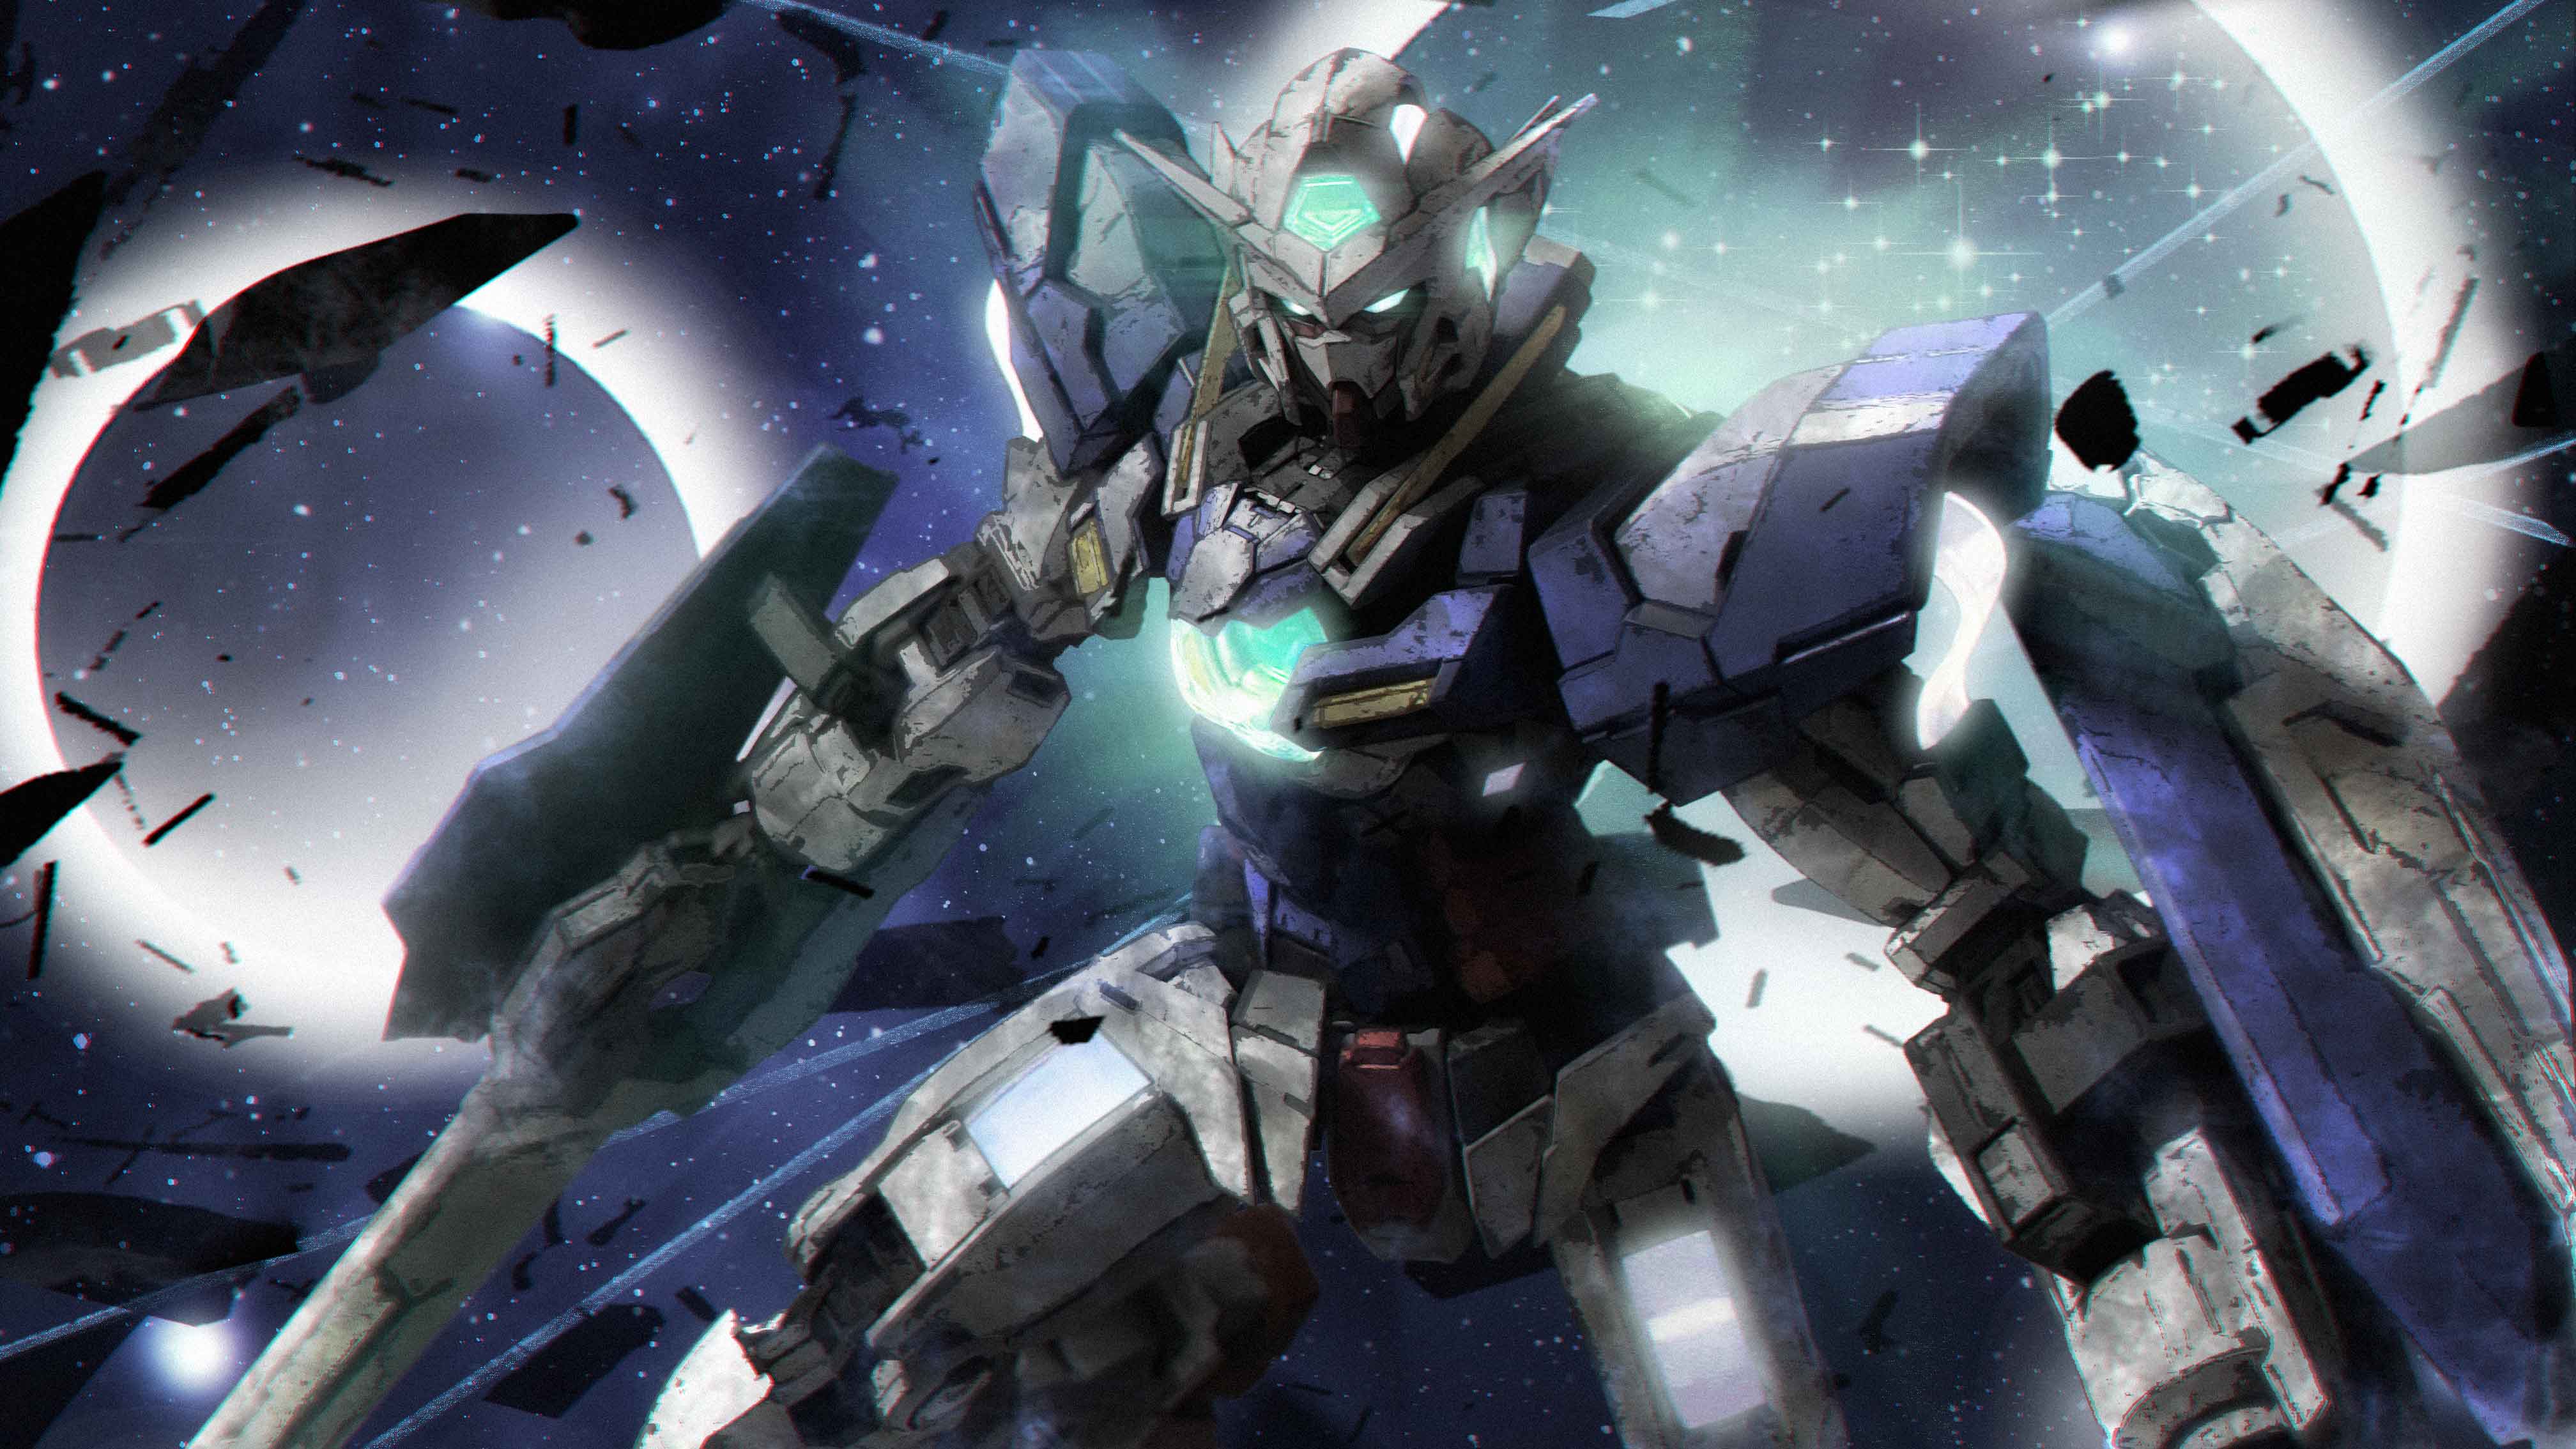 Anime 4032x2268 anime mechs Gundam Mobile Suit Gundam 00 Gundam Exia Super Robot Taisen artwork digital art fan art